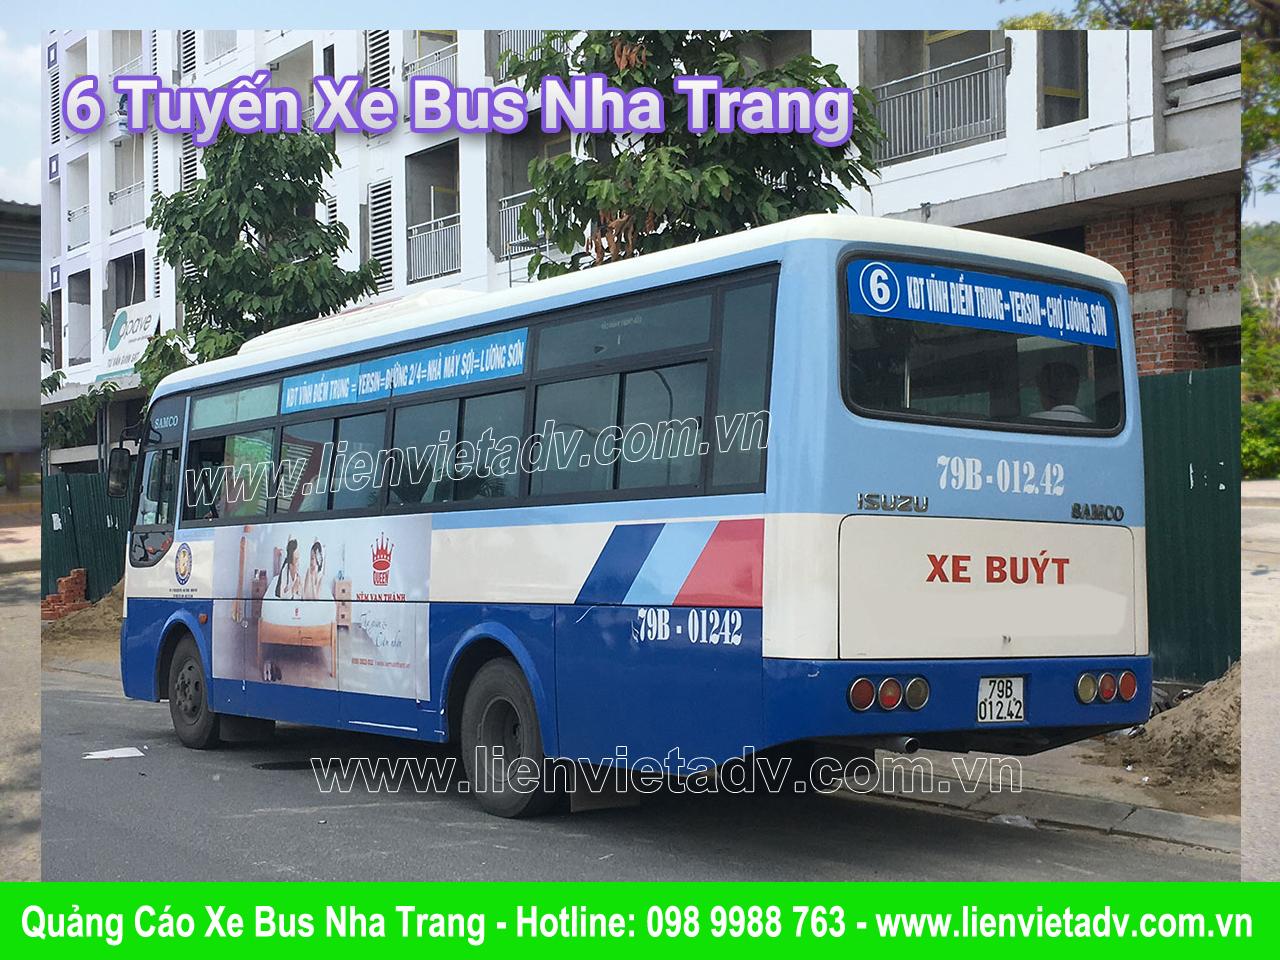 Quảng cáo xe Bus Nha Trang